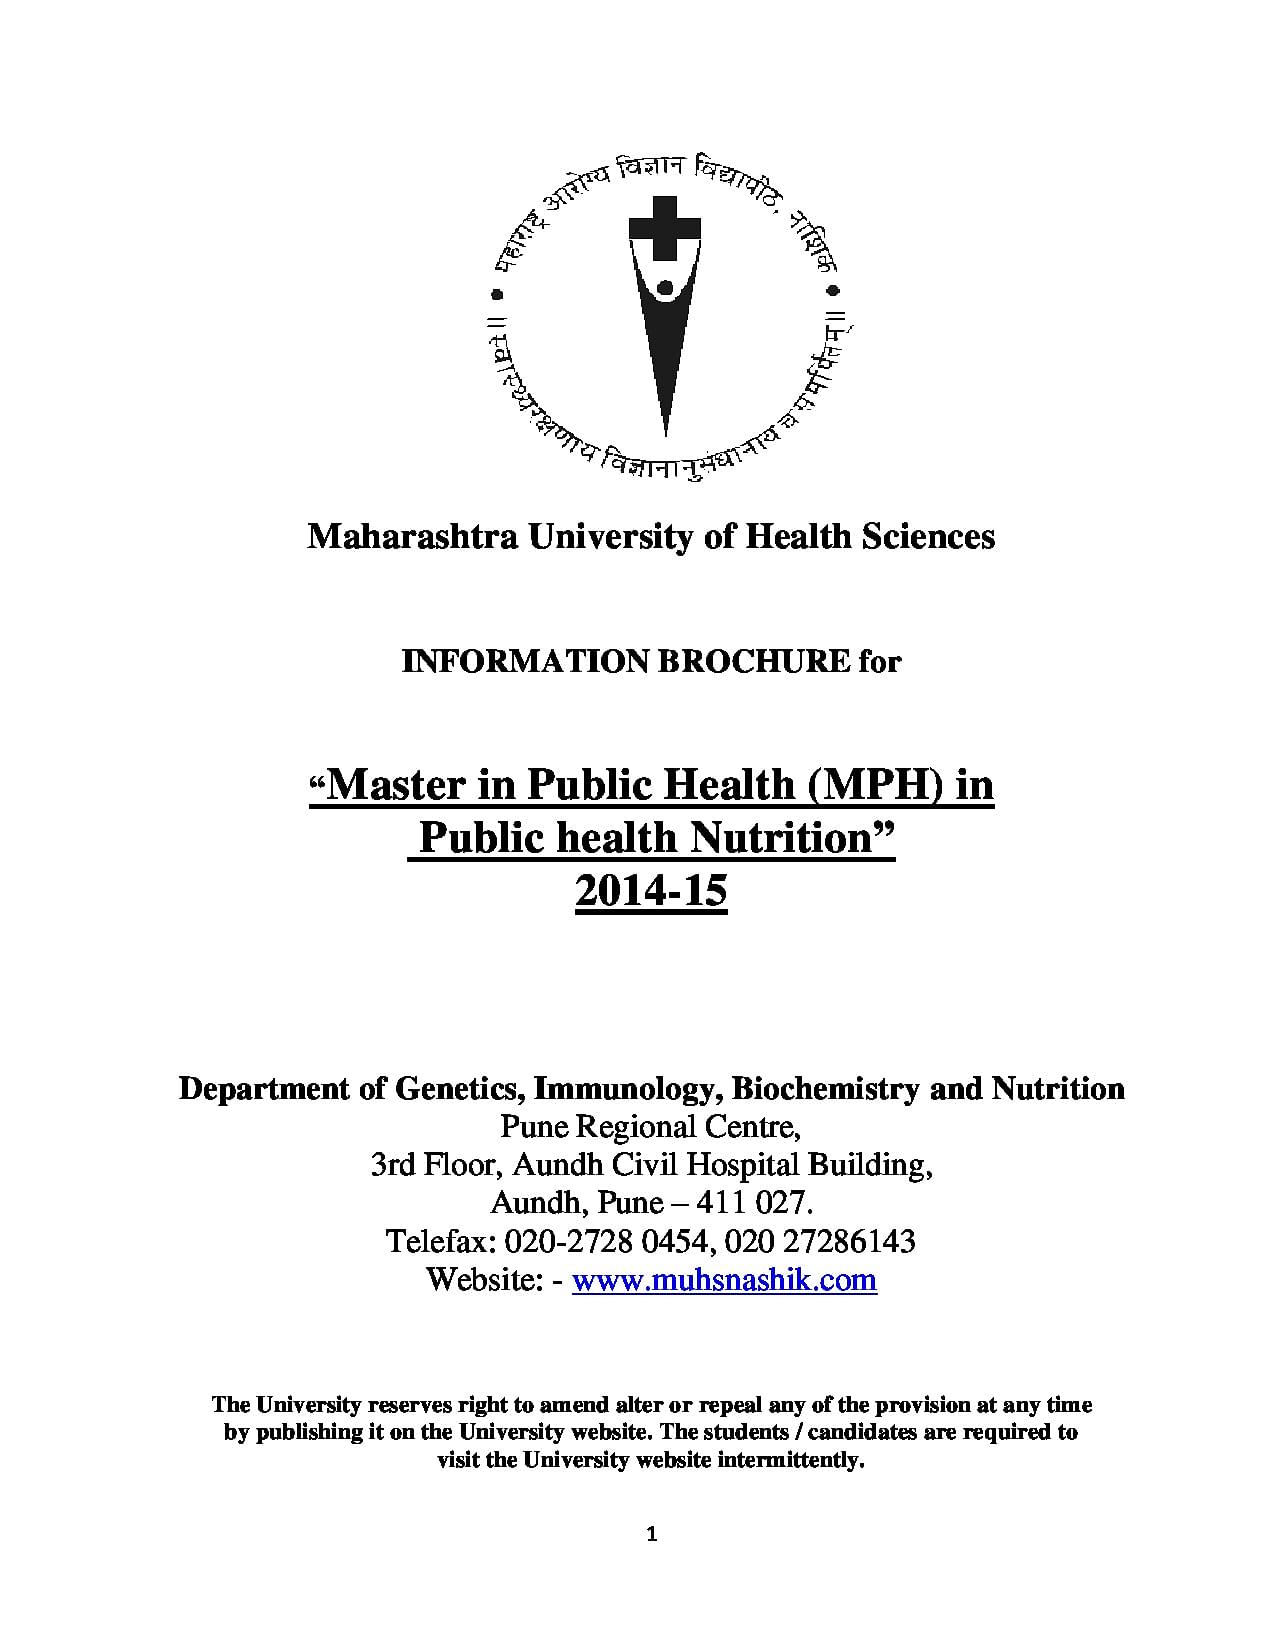 maharashtra university of health sciences dissertation topics